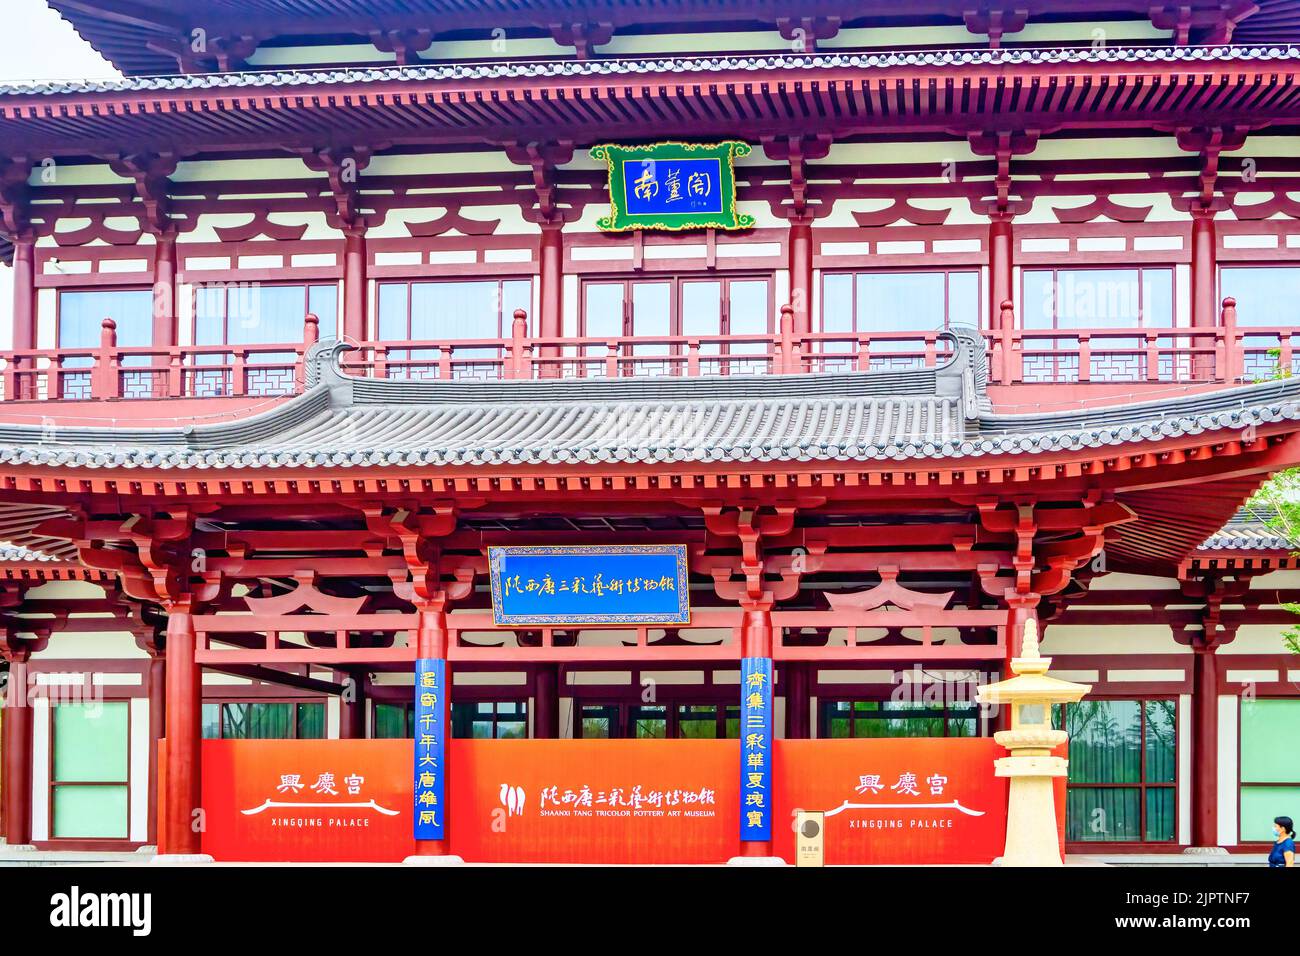 Detail des dreifarbigen Keramikkunstmuseums Shaanxi Tang. Traditionelle chinesische Architektur am Eingang oder an der Fassade des Gebäudes Stockfoto